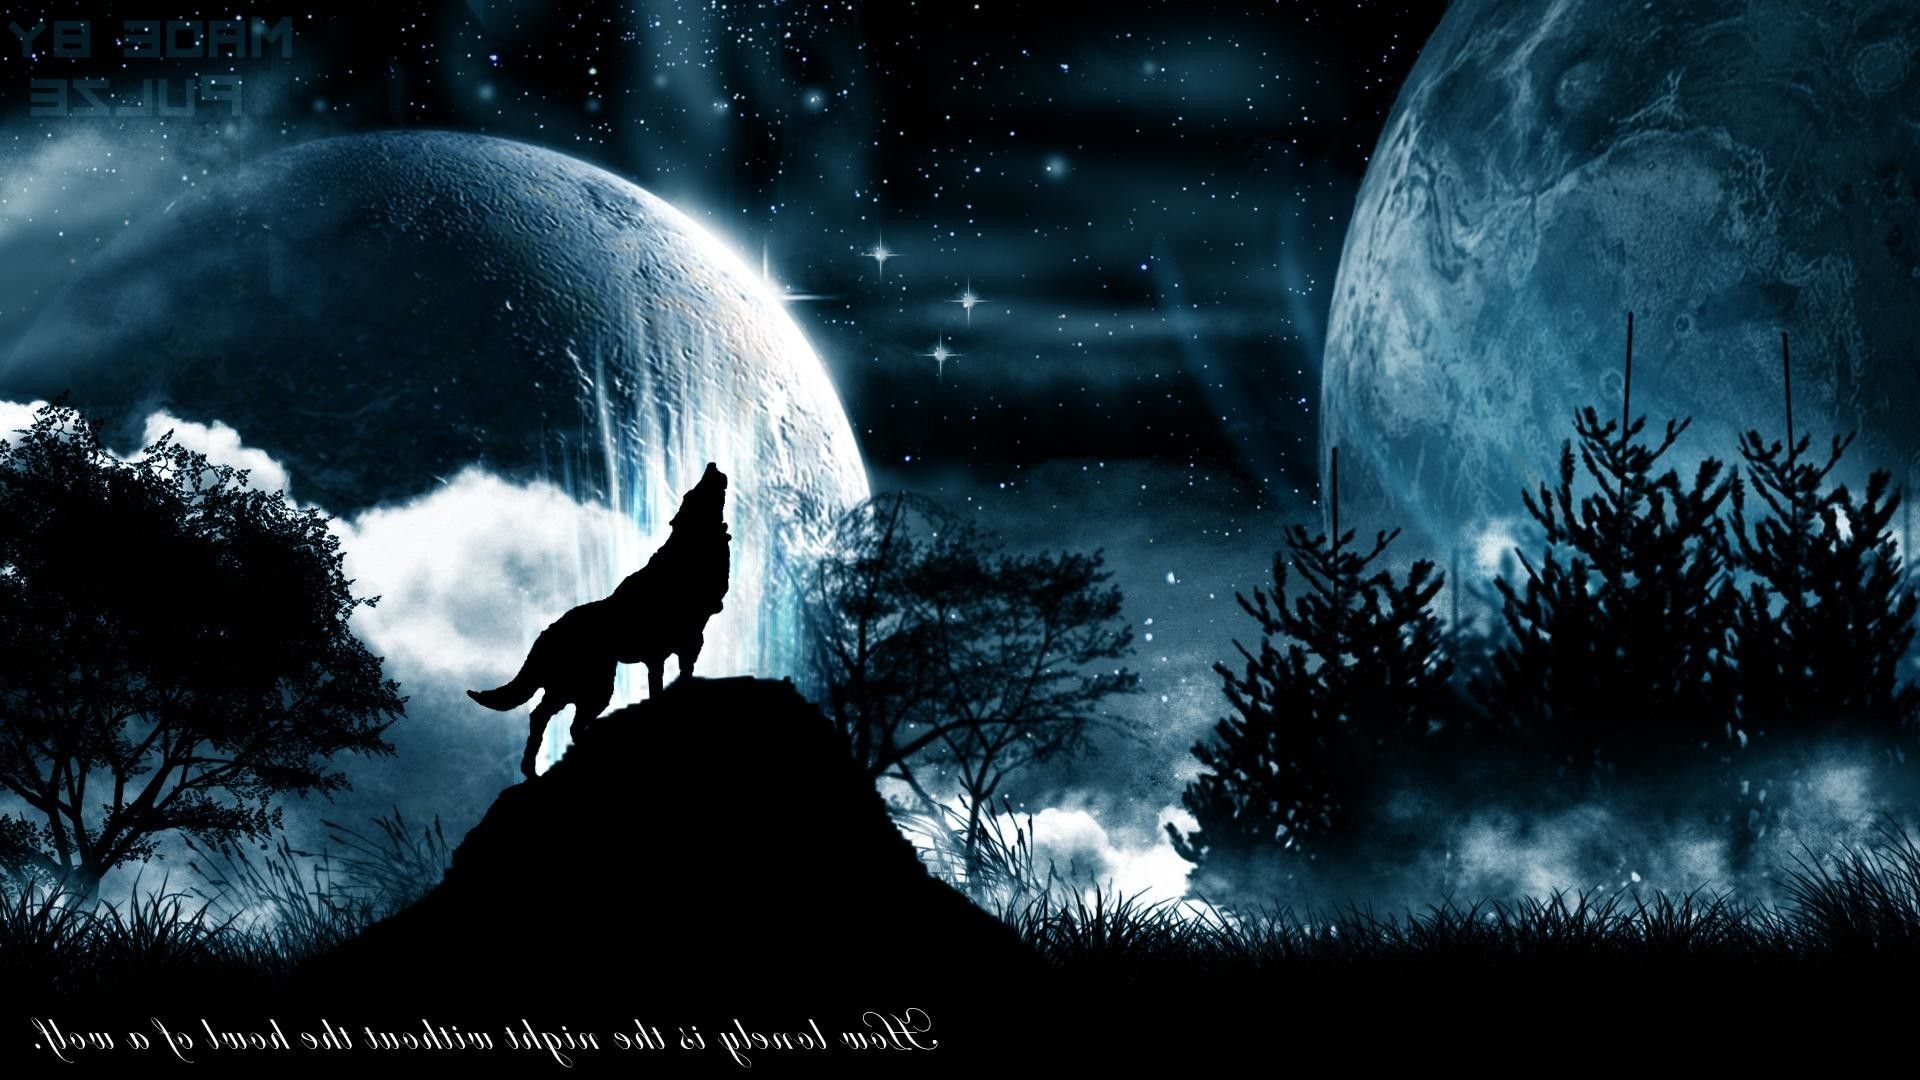 Howling wolf wallpaper  1920x1200  1345052  WallpaperUP